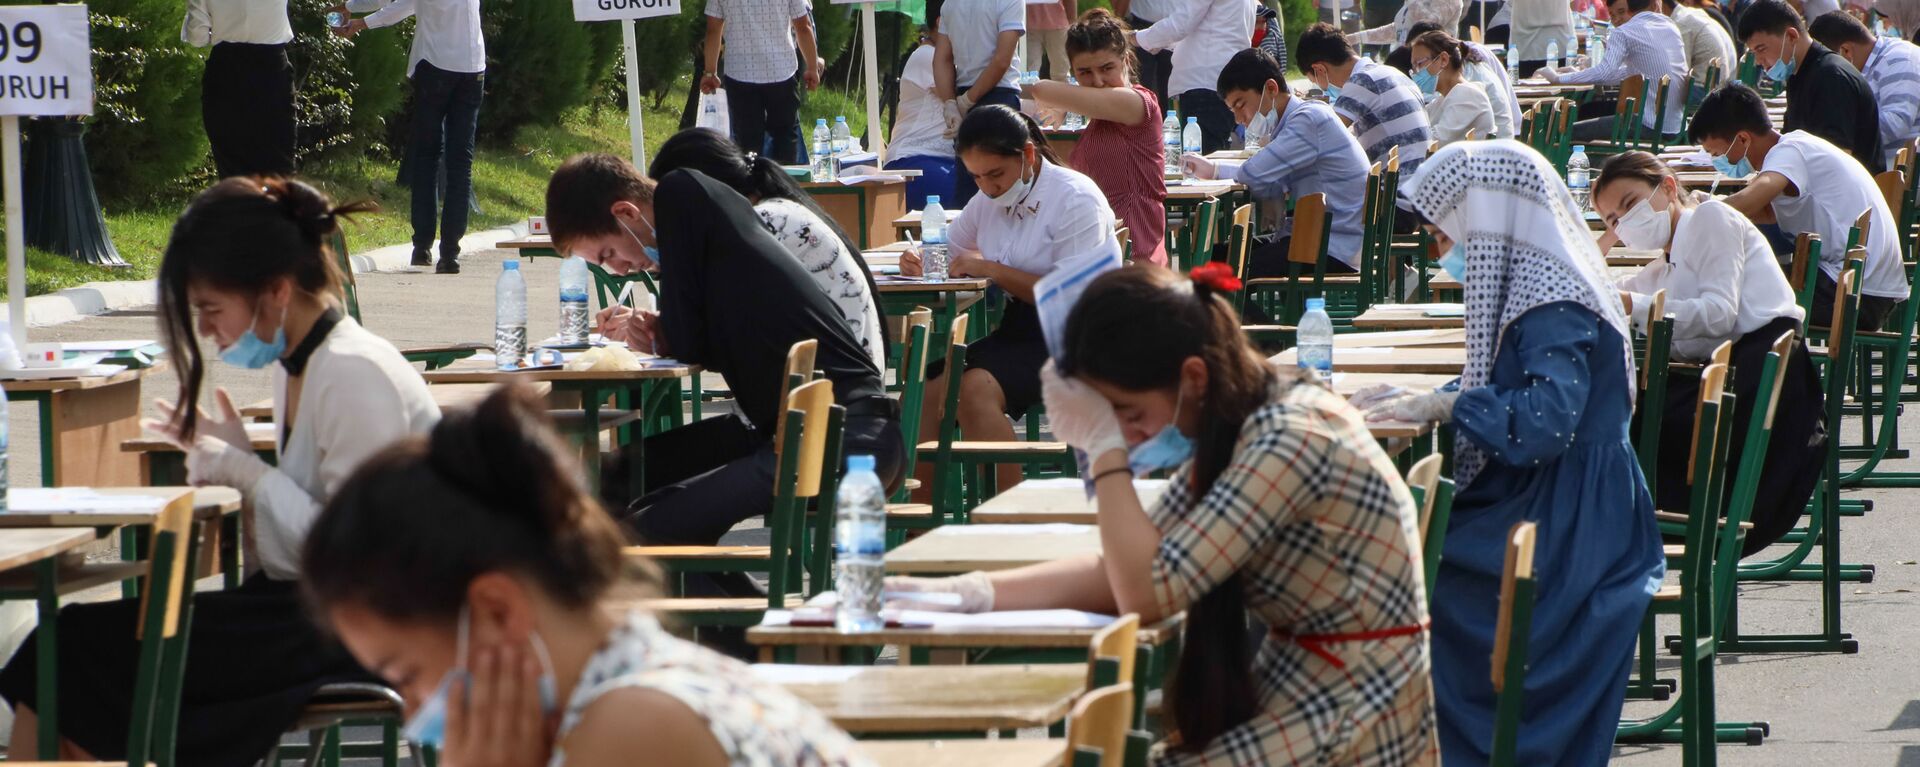 Узбекские студенты сдают вступительные экзамены под открытым небом в Ташкенте - Sputnik Ўзбекистон, 1920, 02.06.2021